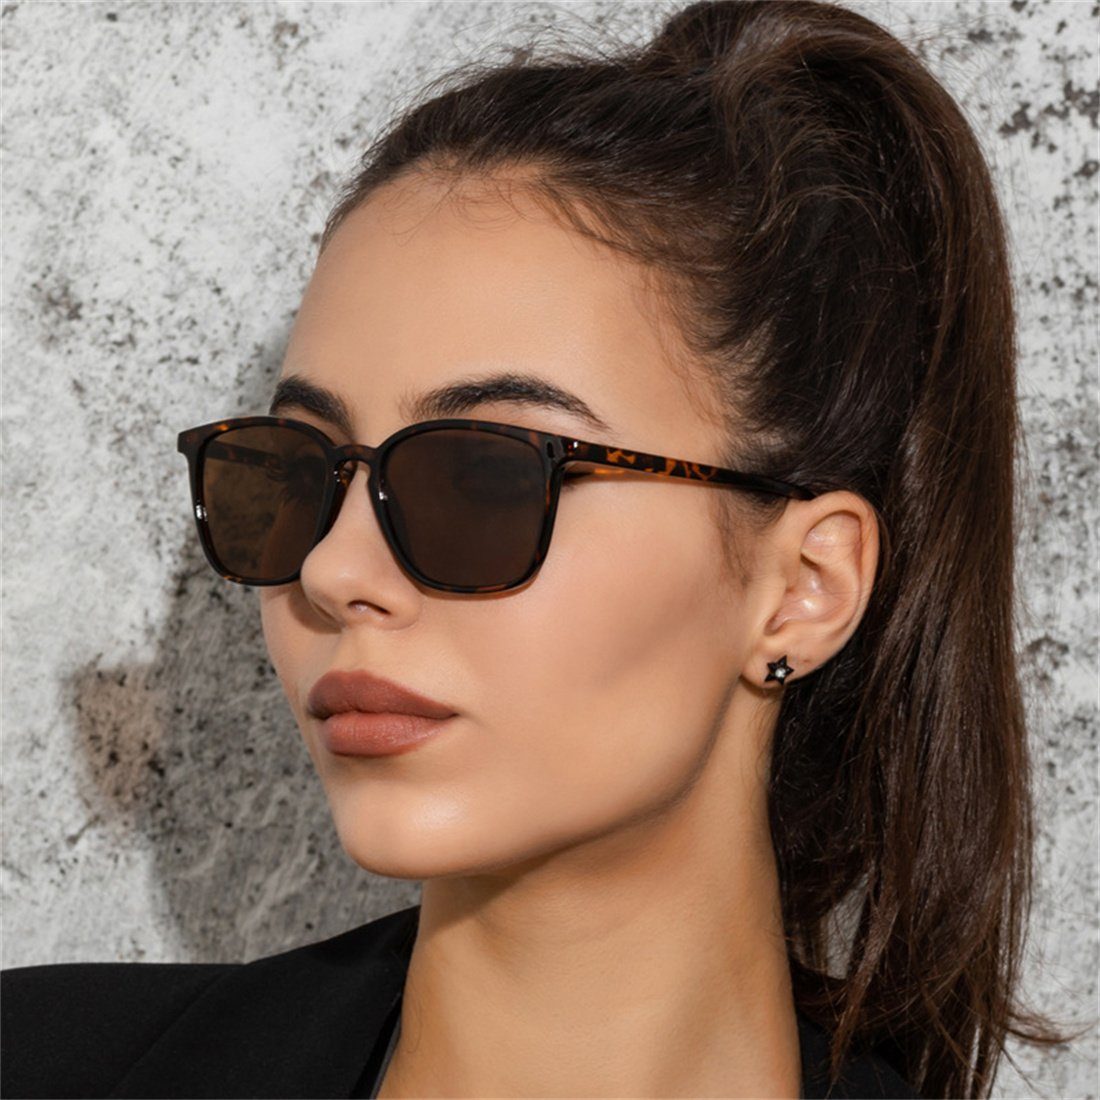 DÖRÖY Sonnenbrille Quadratische Retro-Sonnenbrillen für Männer und Frauen, Sonnenbrillen